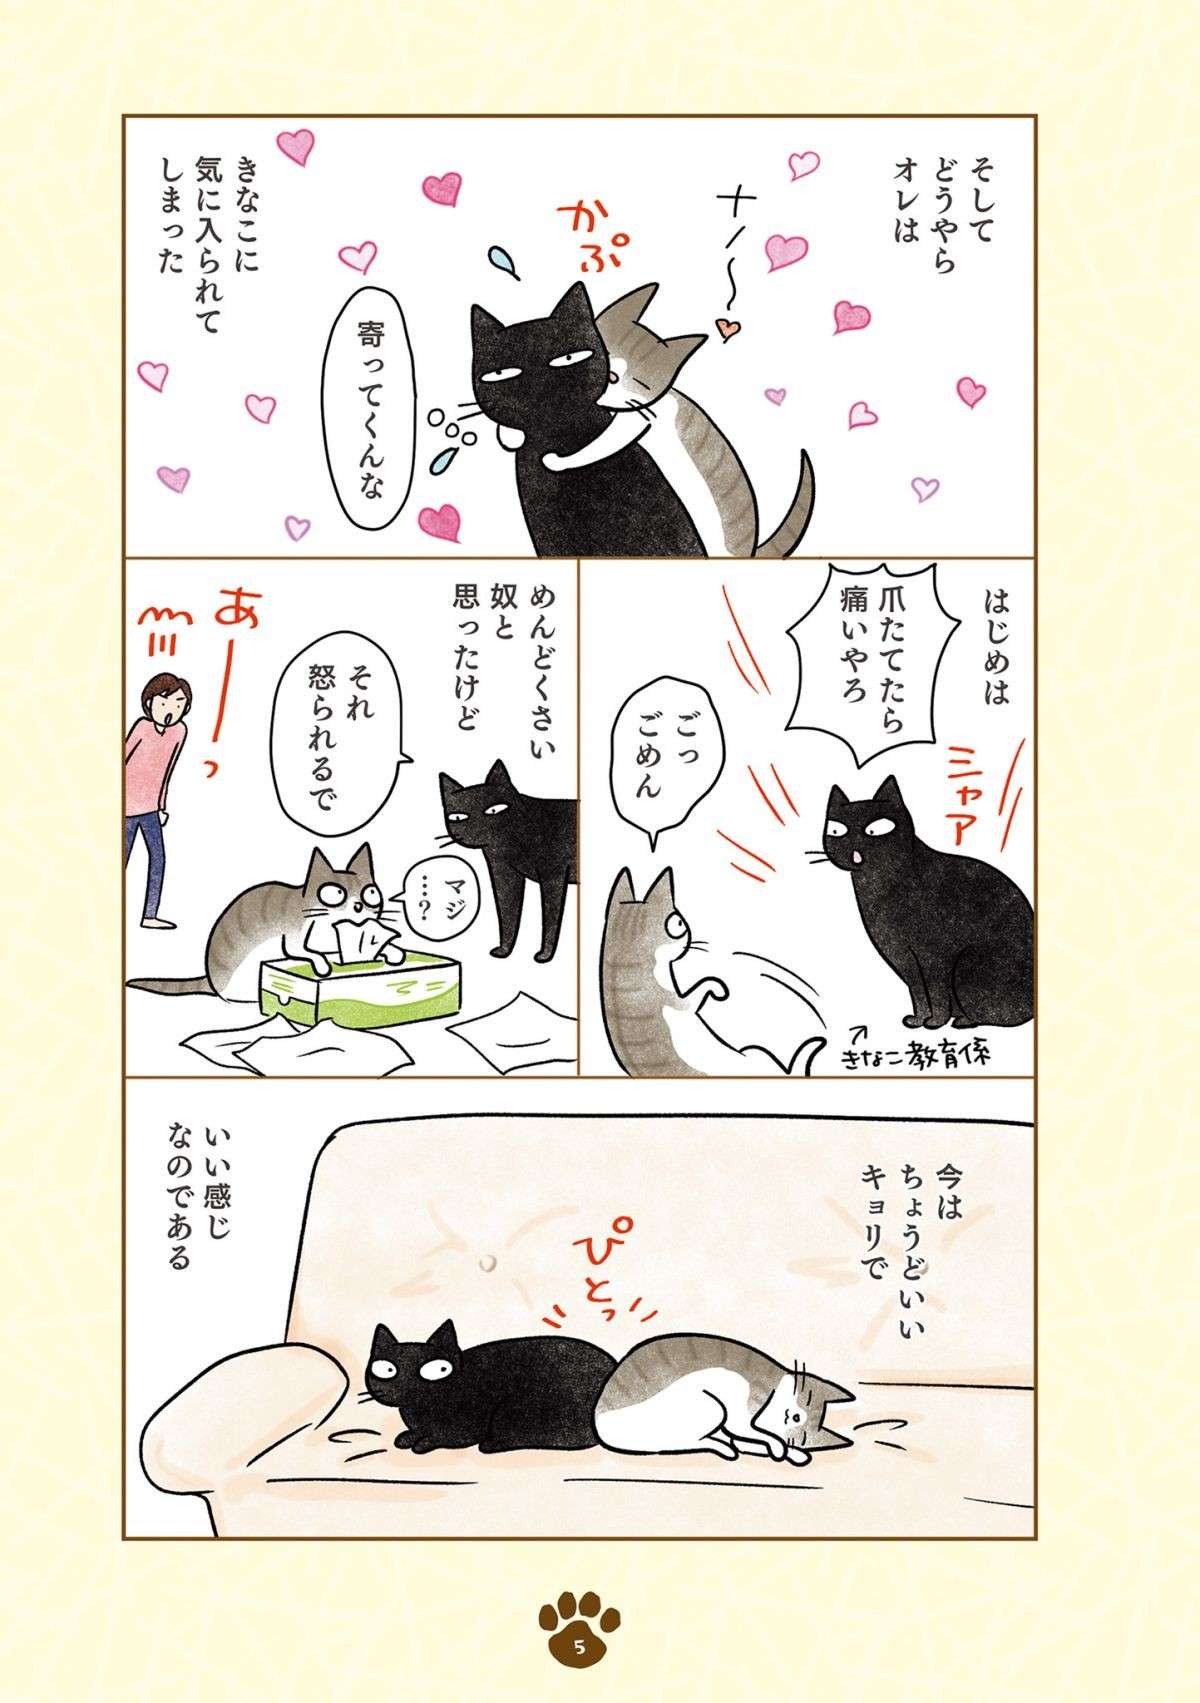 「え、猫やのに？」猫らしくない黒猫。新入りキジシロ猫との関係は？／黒猫ナノとキジシロ猫きなこ kuroneko_nano1-5.jpg